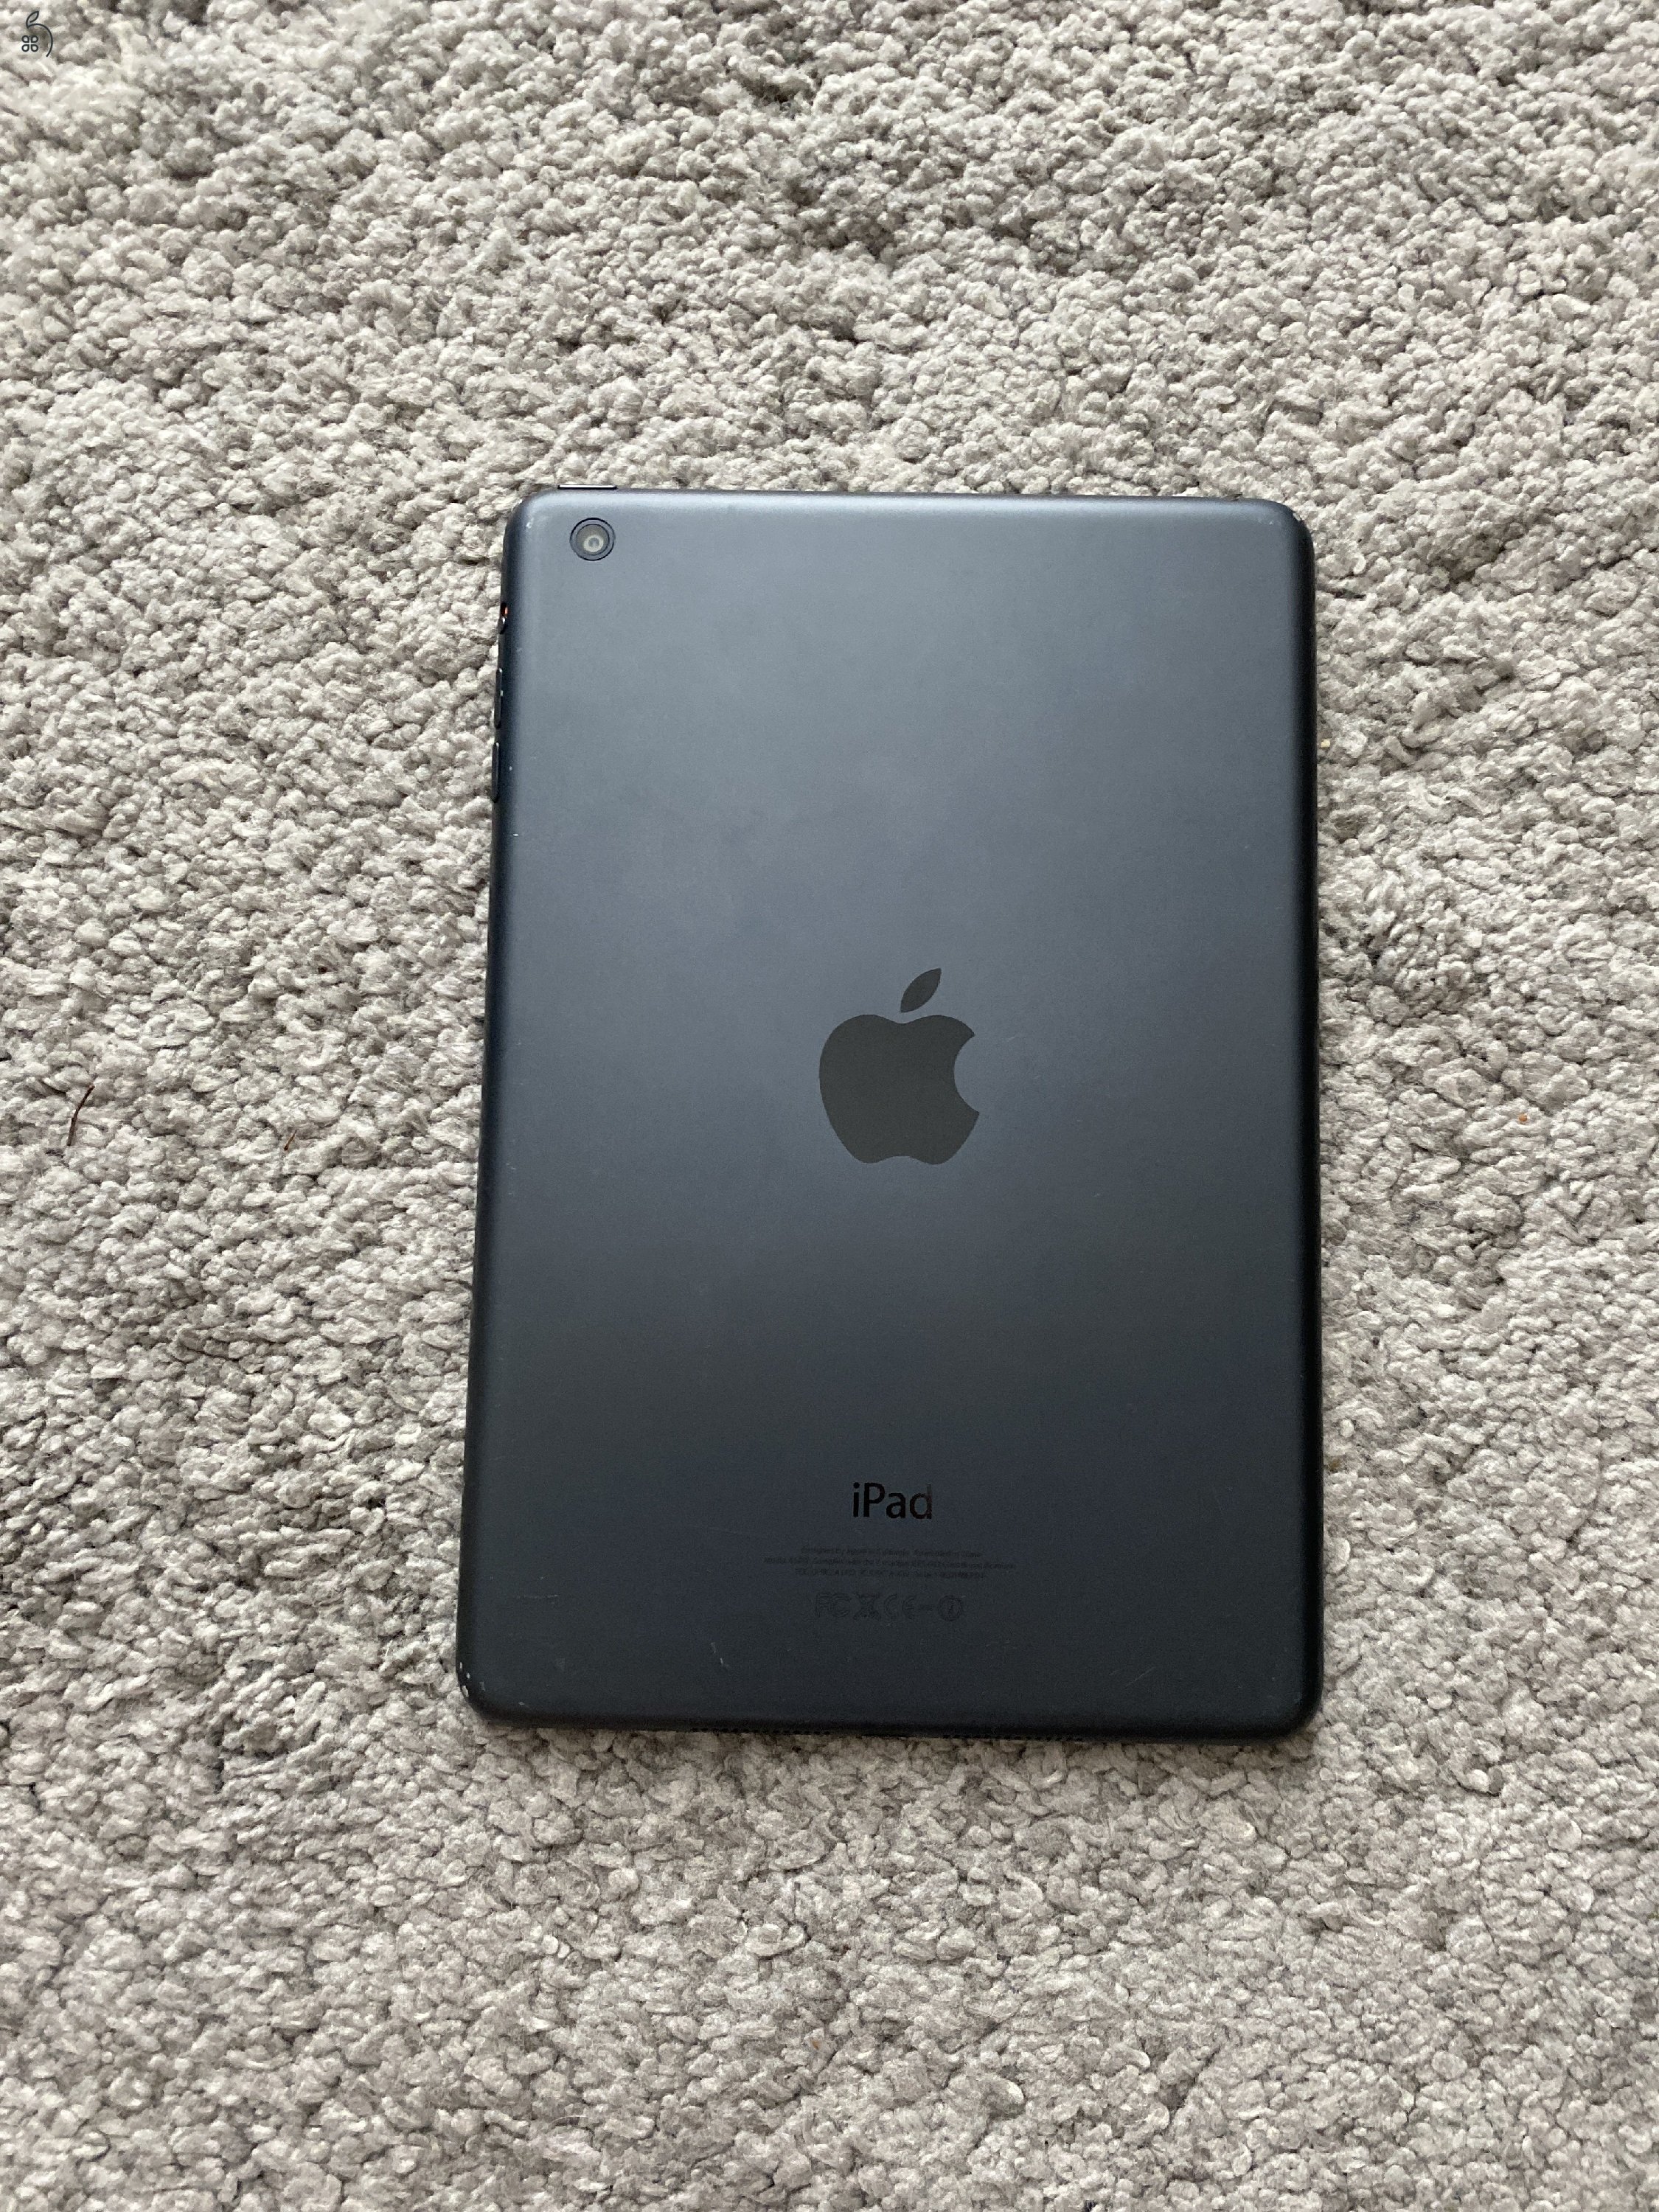 iPad Mini 2 - 32GB